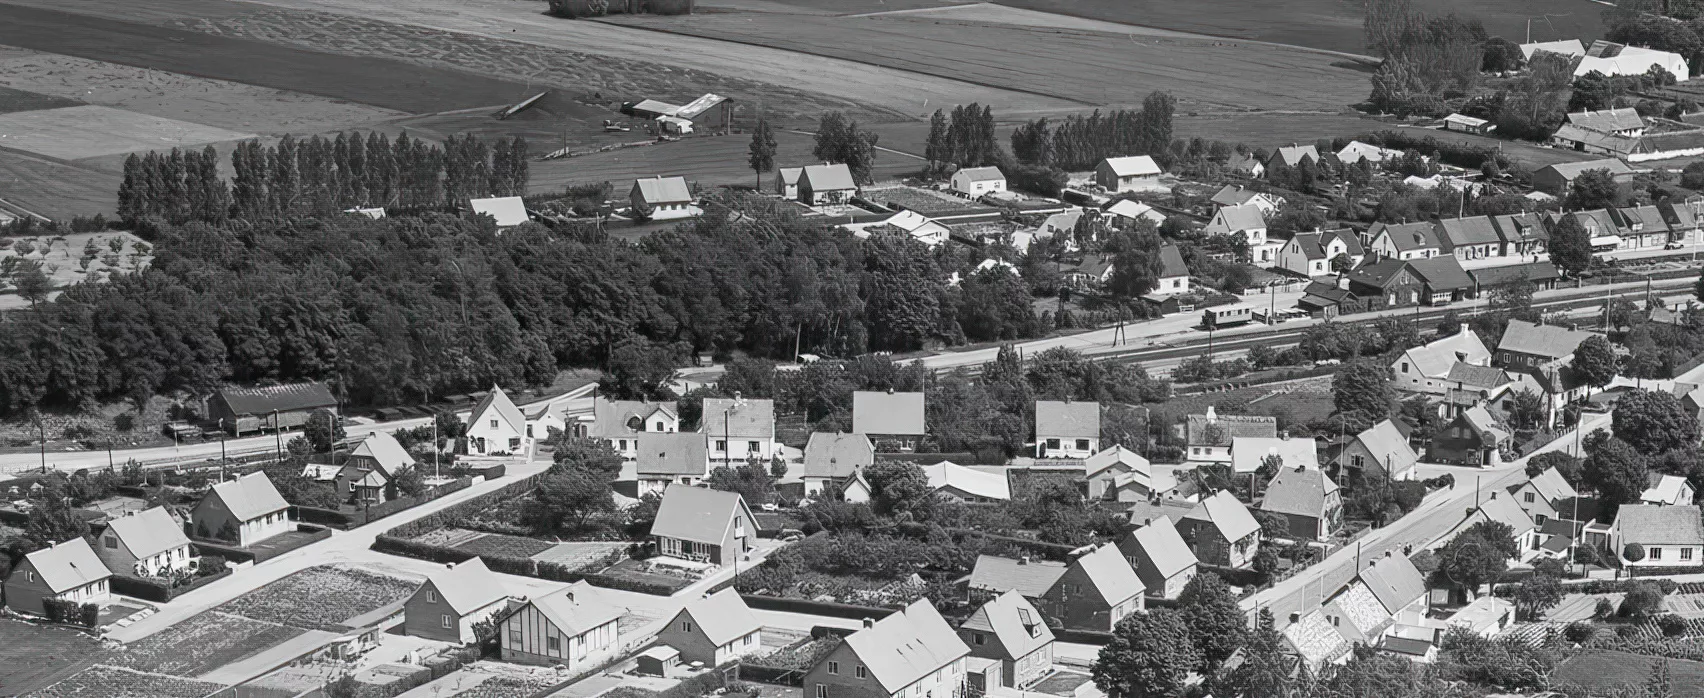 Billede af Knabstrup Billetsalgssted.